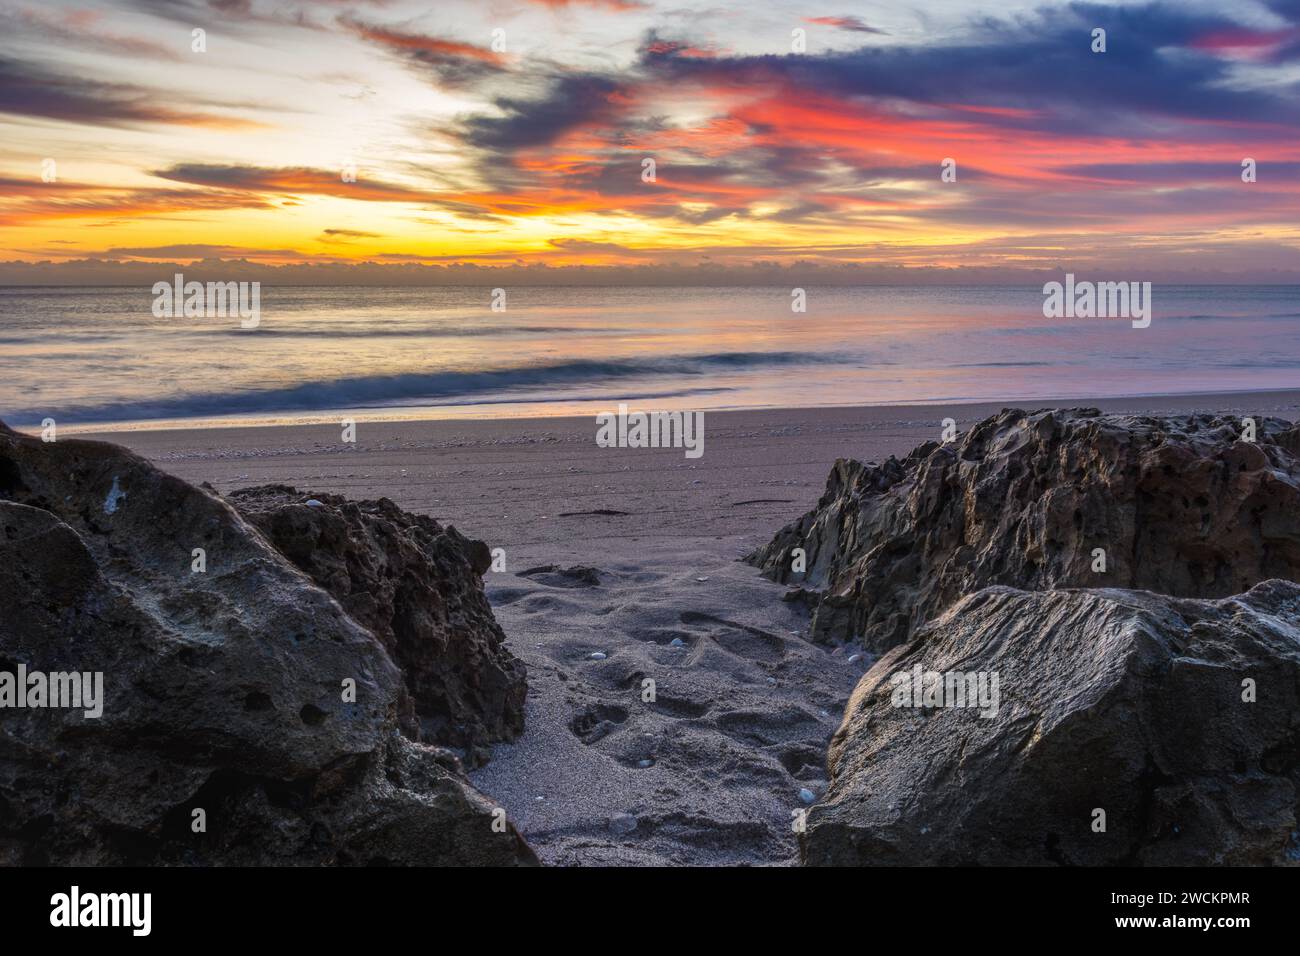 Spettacolare alba sulla spiaggia con nuvole vivaci e terreno roccioso, ideale per contenuti di viaggio vivaci, grafica Web dinamica e sfondi mozzafiato. Foto Stock